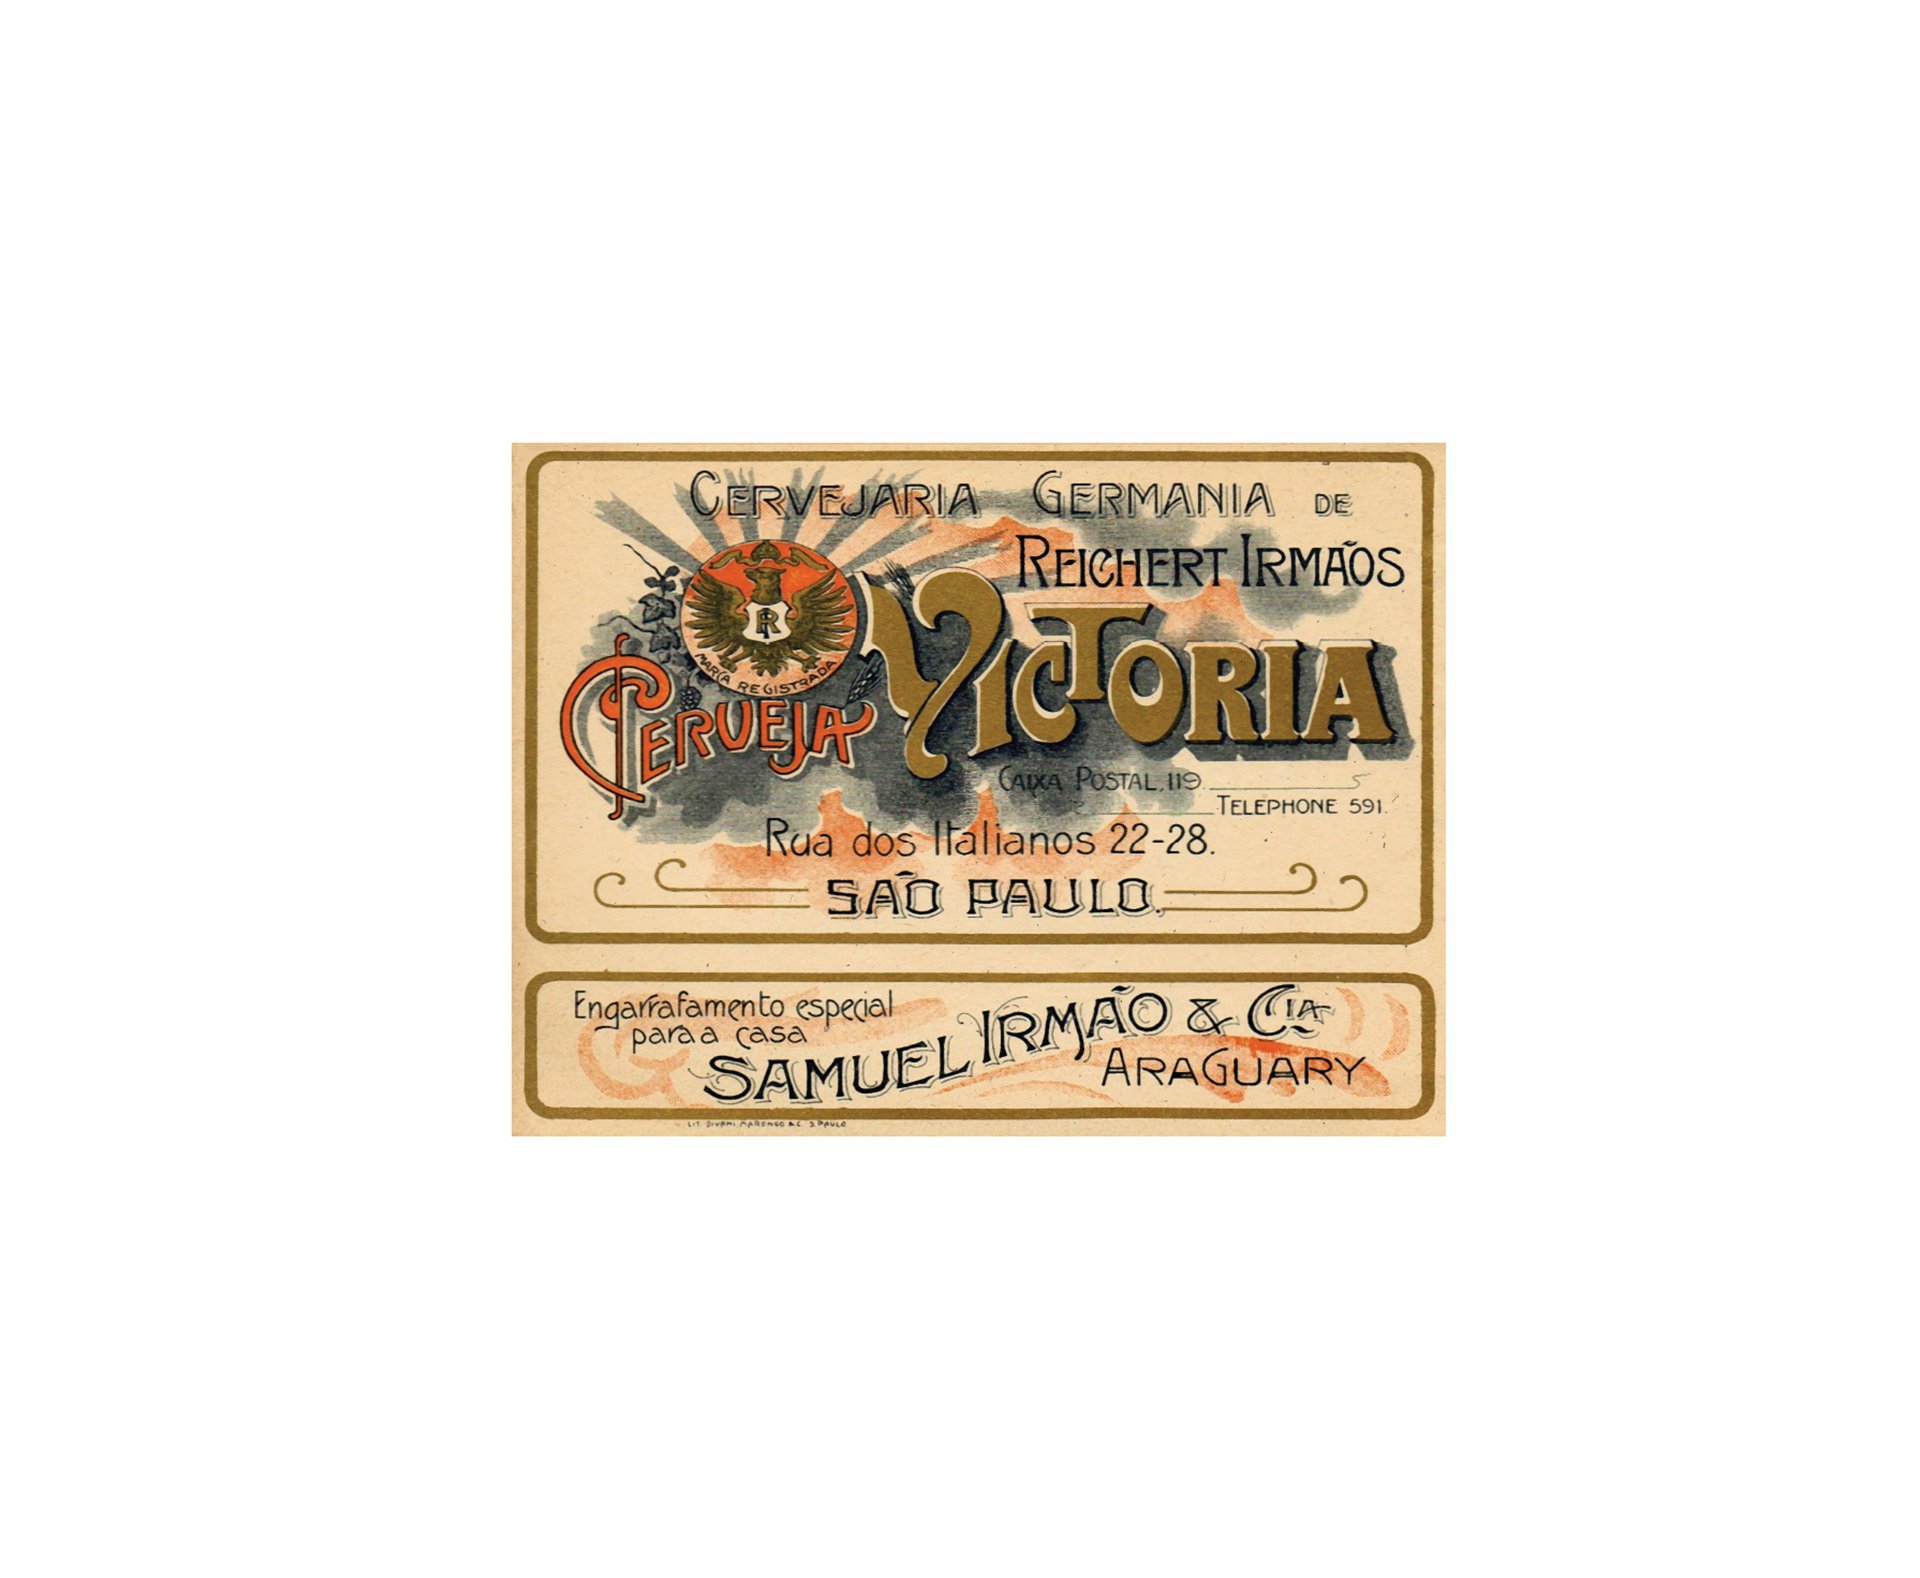 Placa All Classics Cervejaria Germania - Victoria